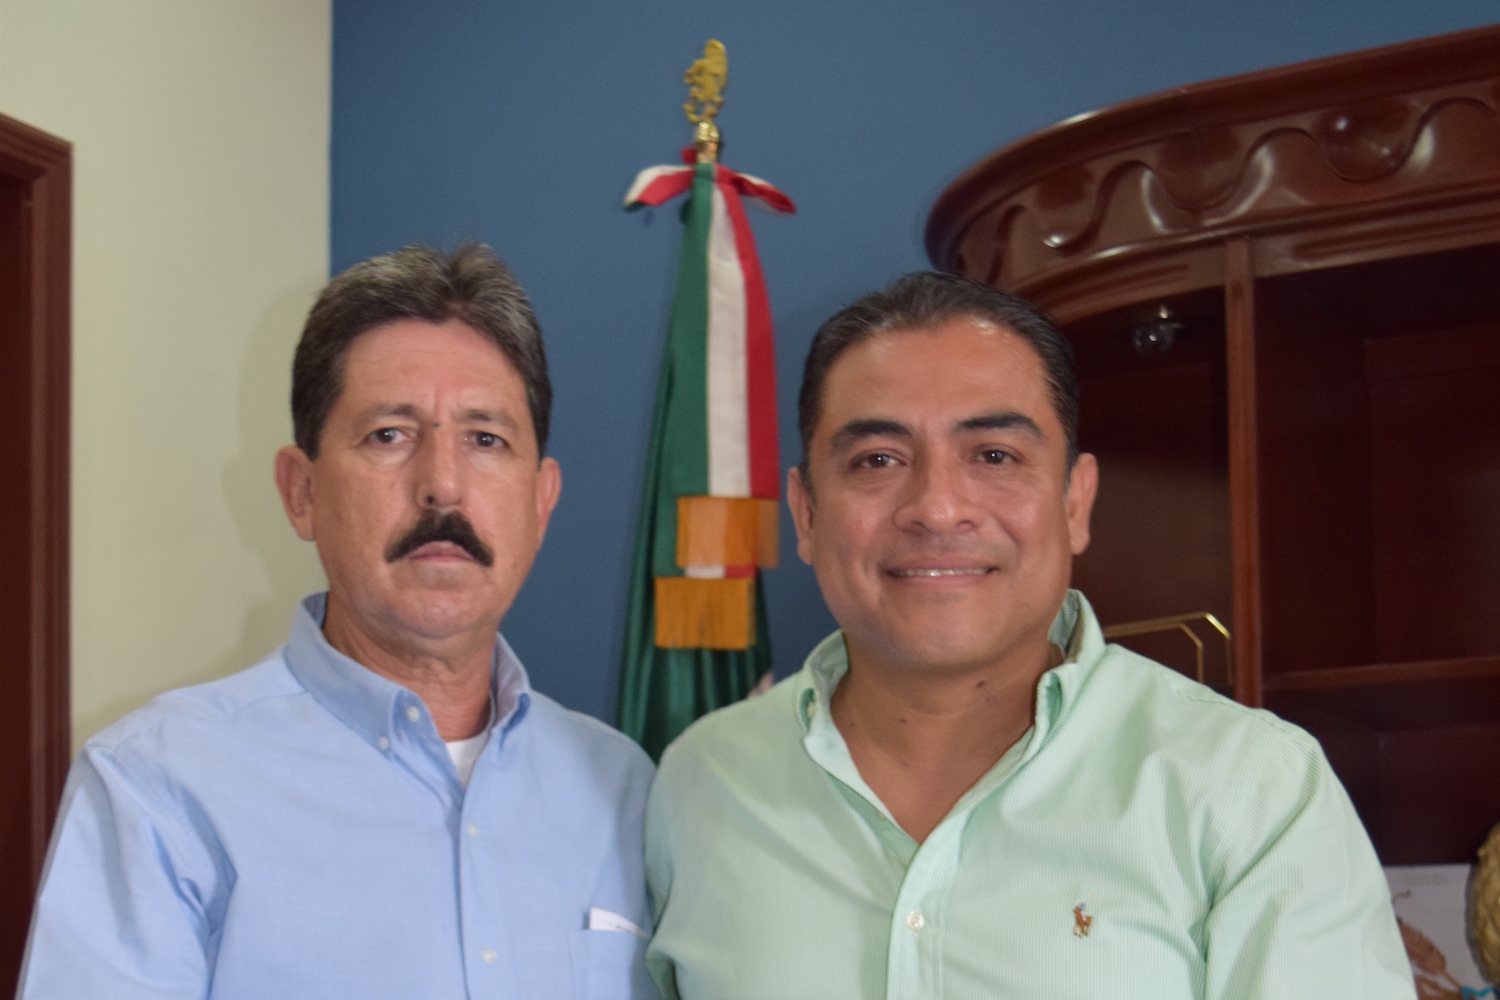 Francisco Holmos acompañado del Alcalde, cuando fue nombrado titular de Zofemat en Los Cabos